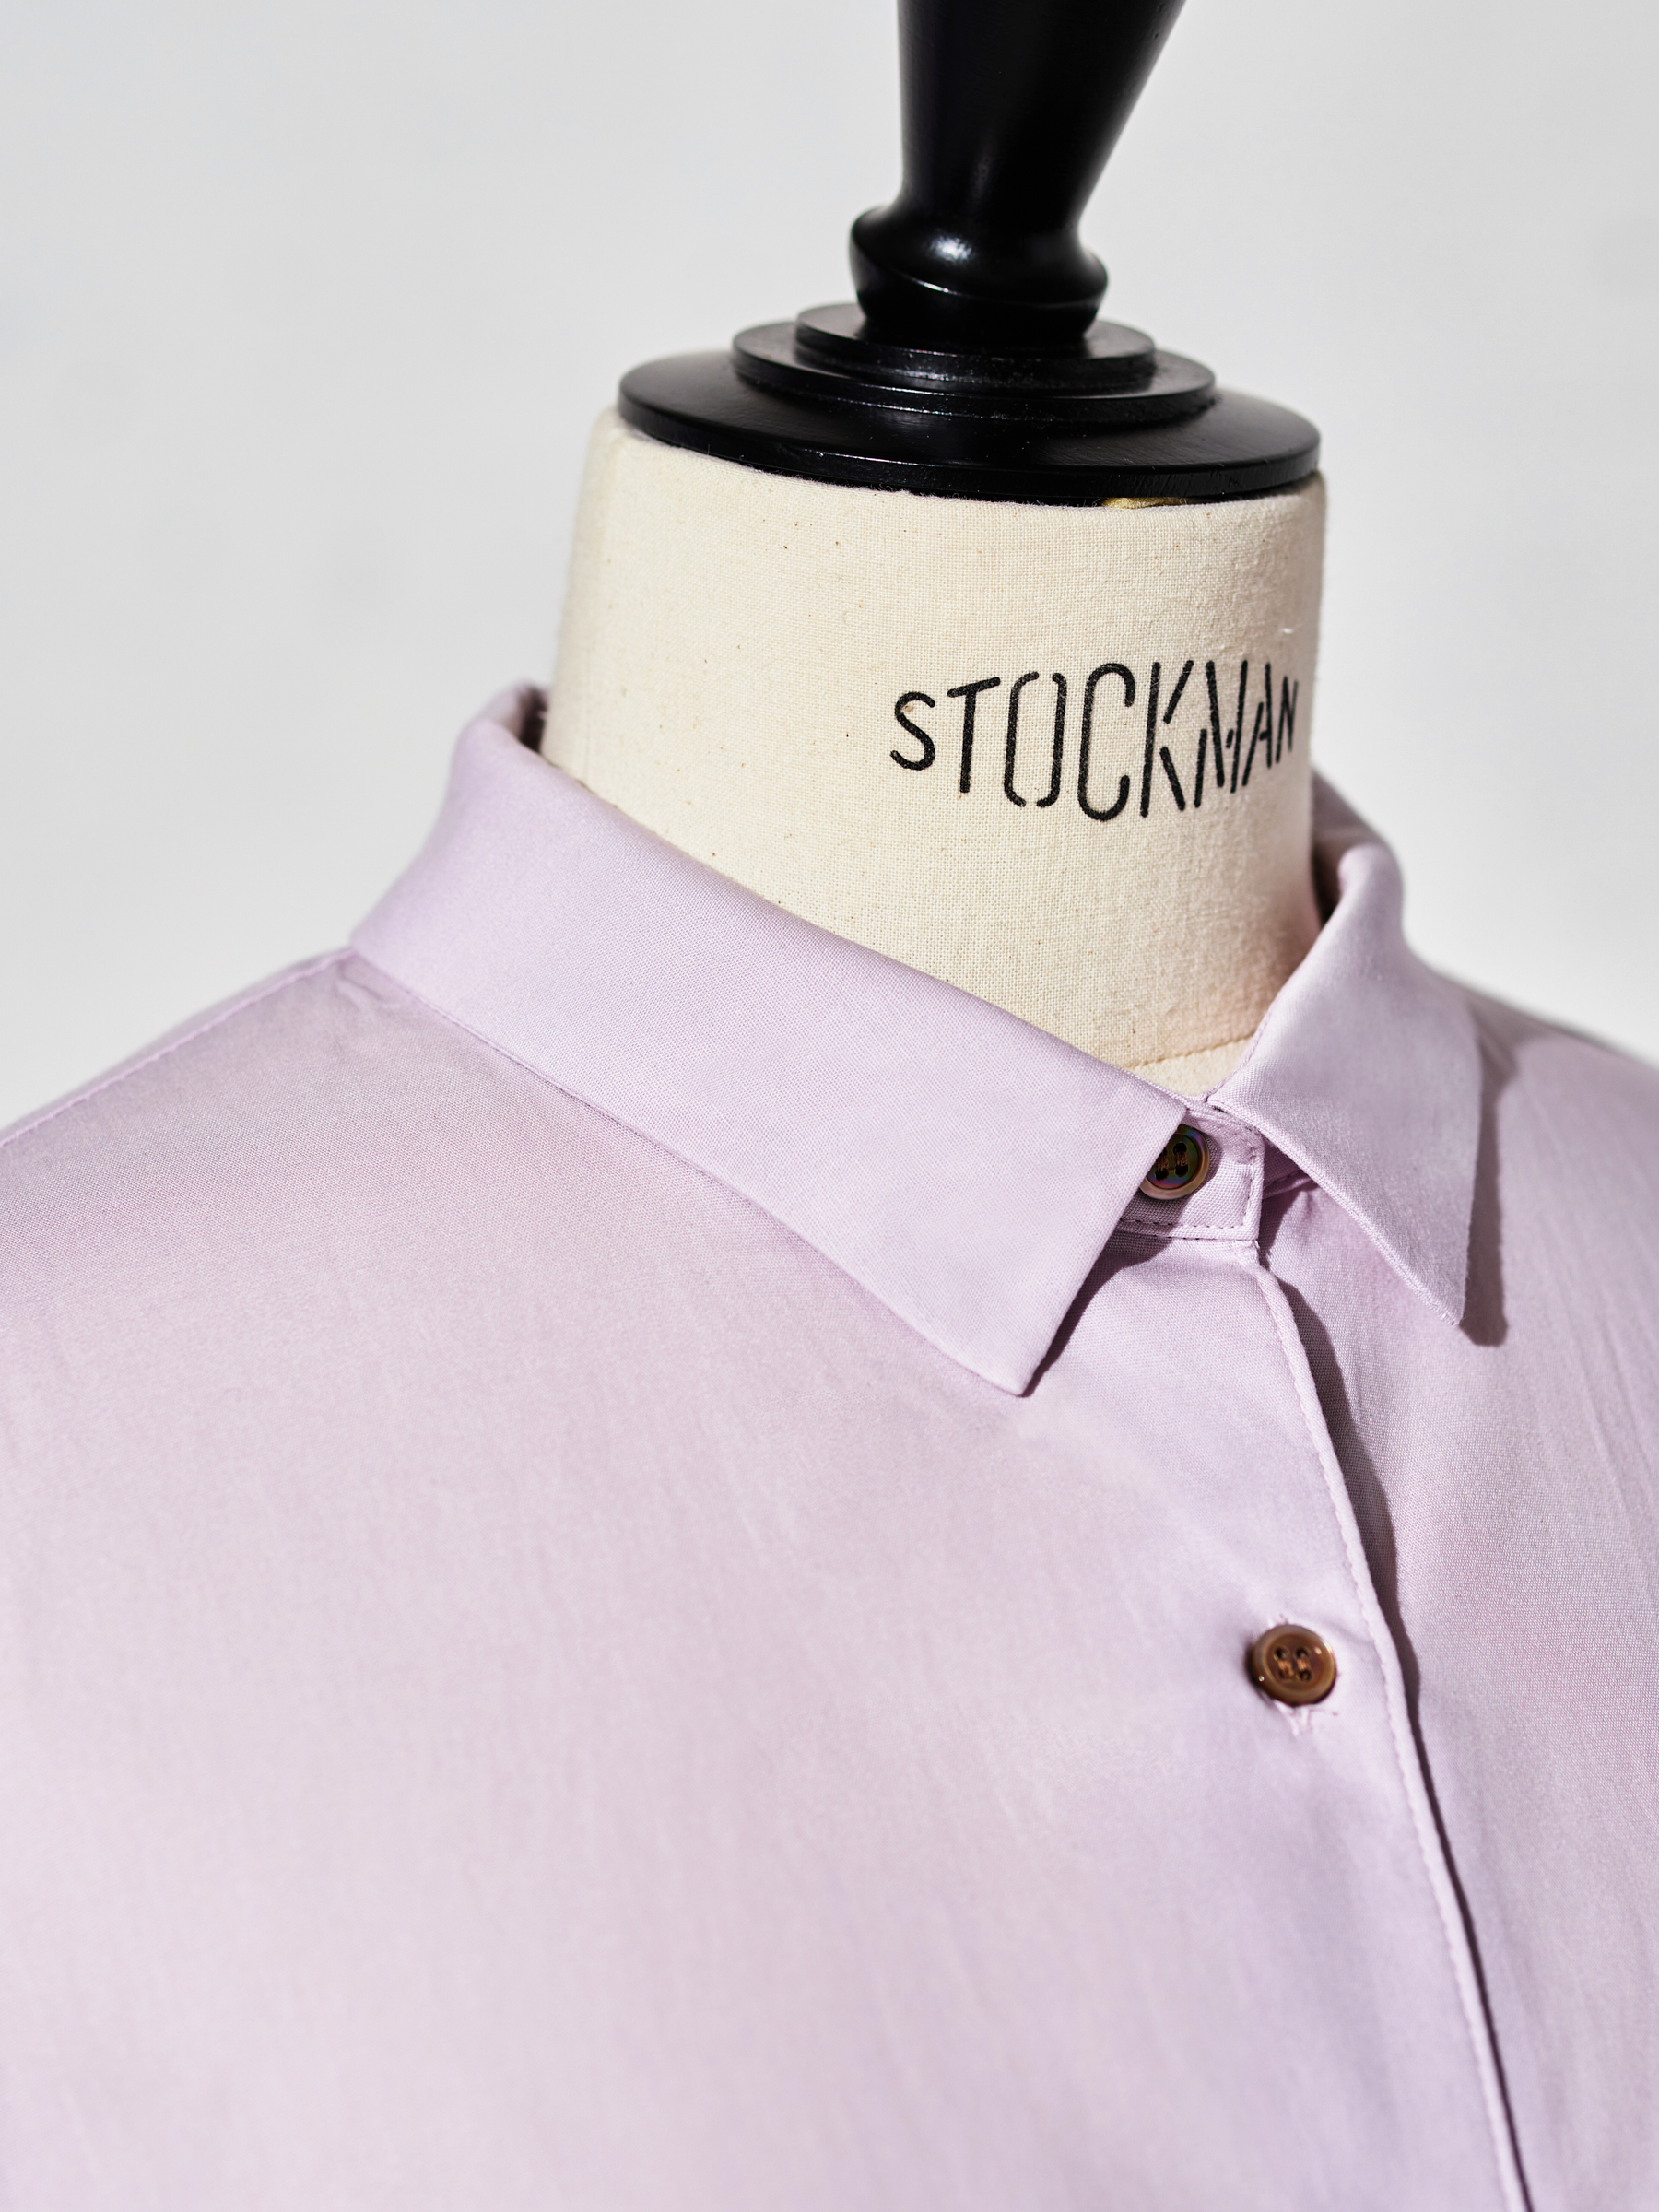 シャツの印象を大きく左右する衿は、小ぶりで控えめなナローカラー